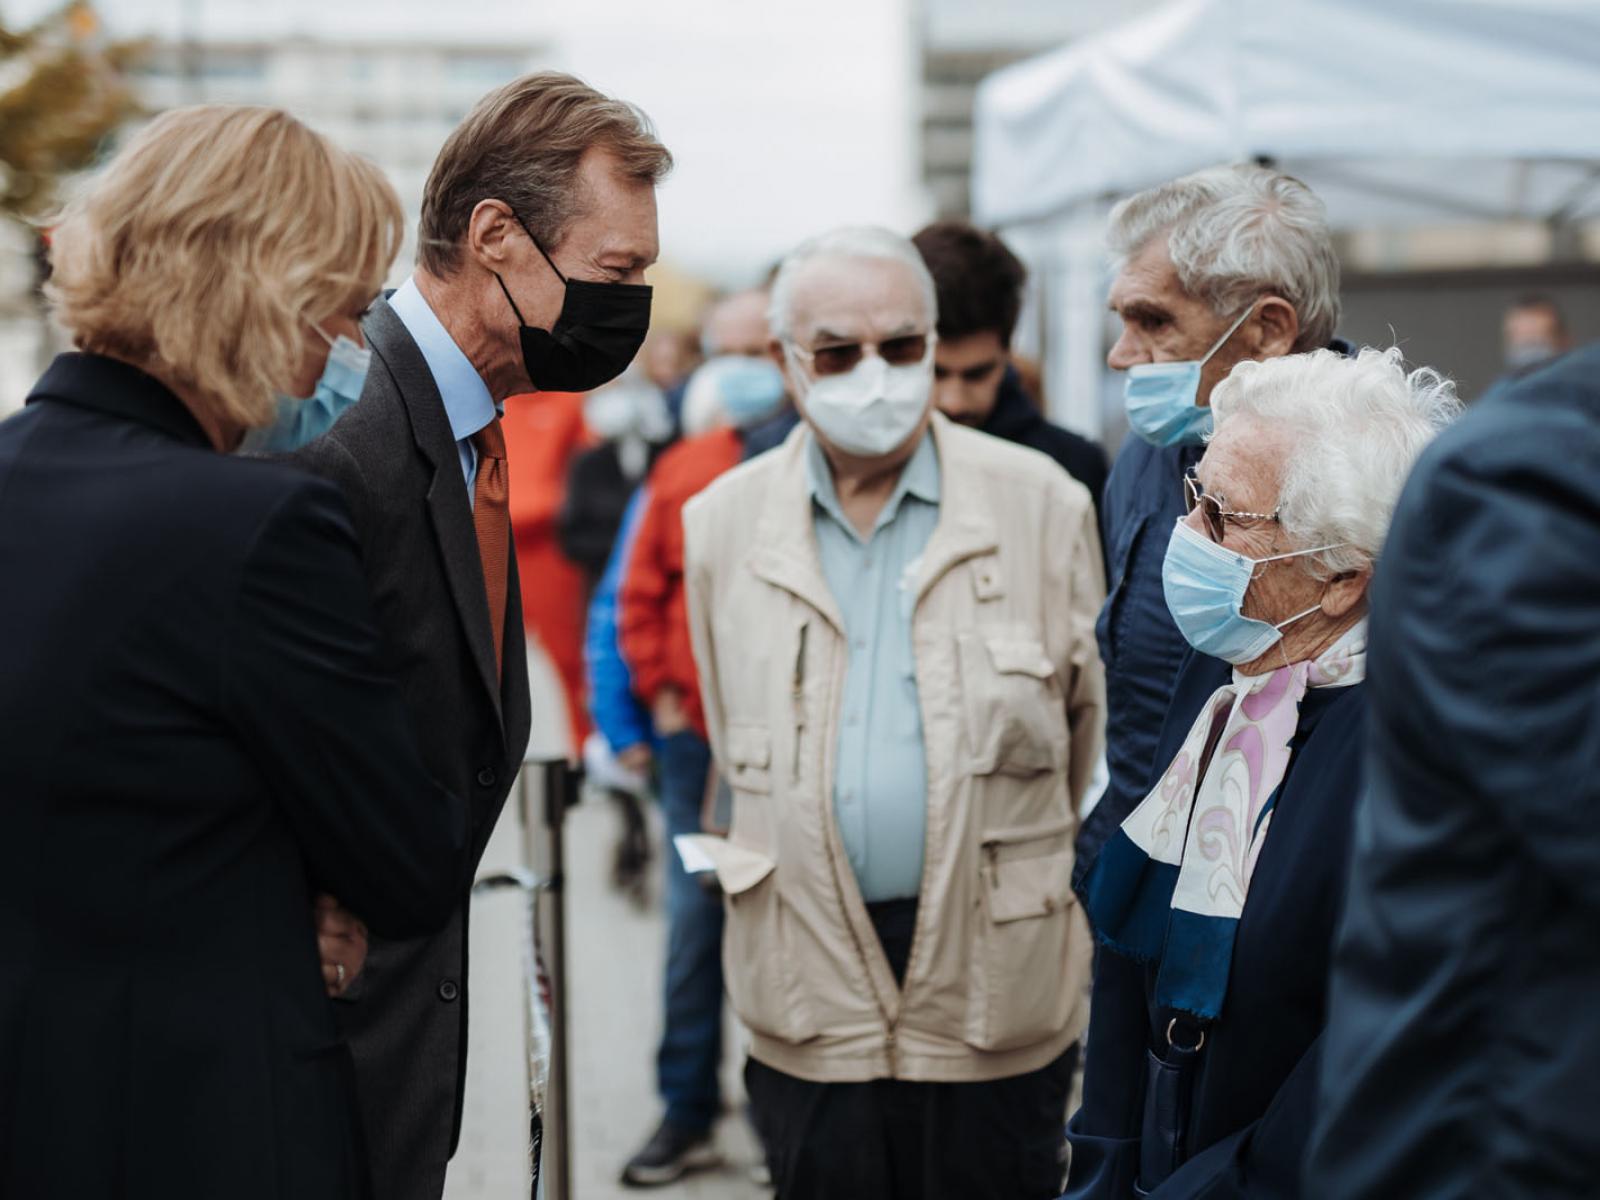 Le Grand-Duc discute avec une personne âgée venue se faire vacciner